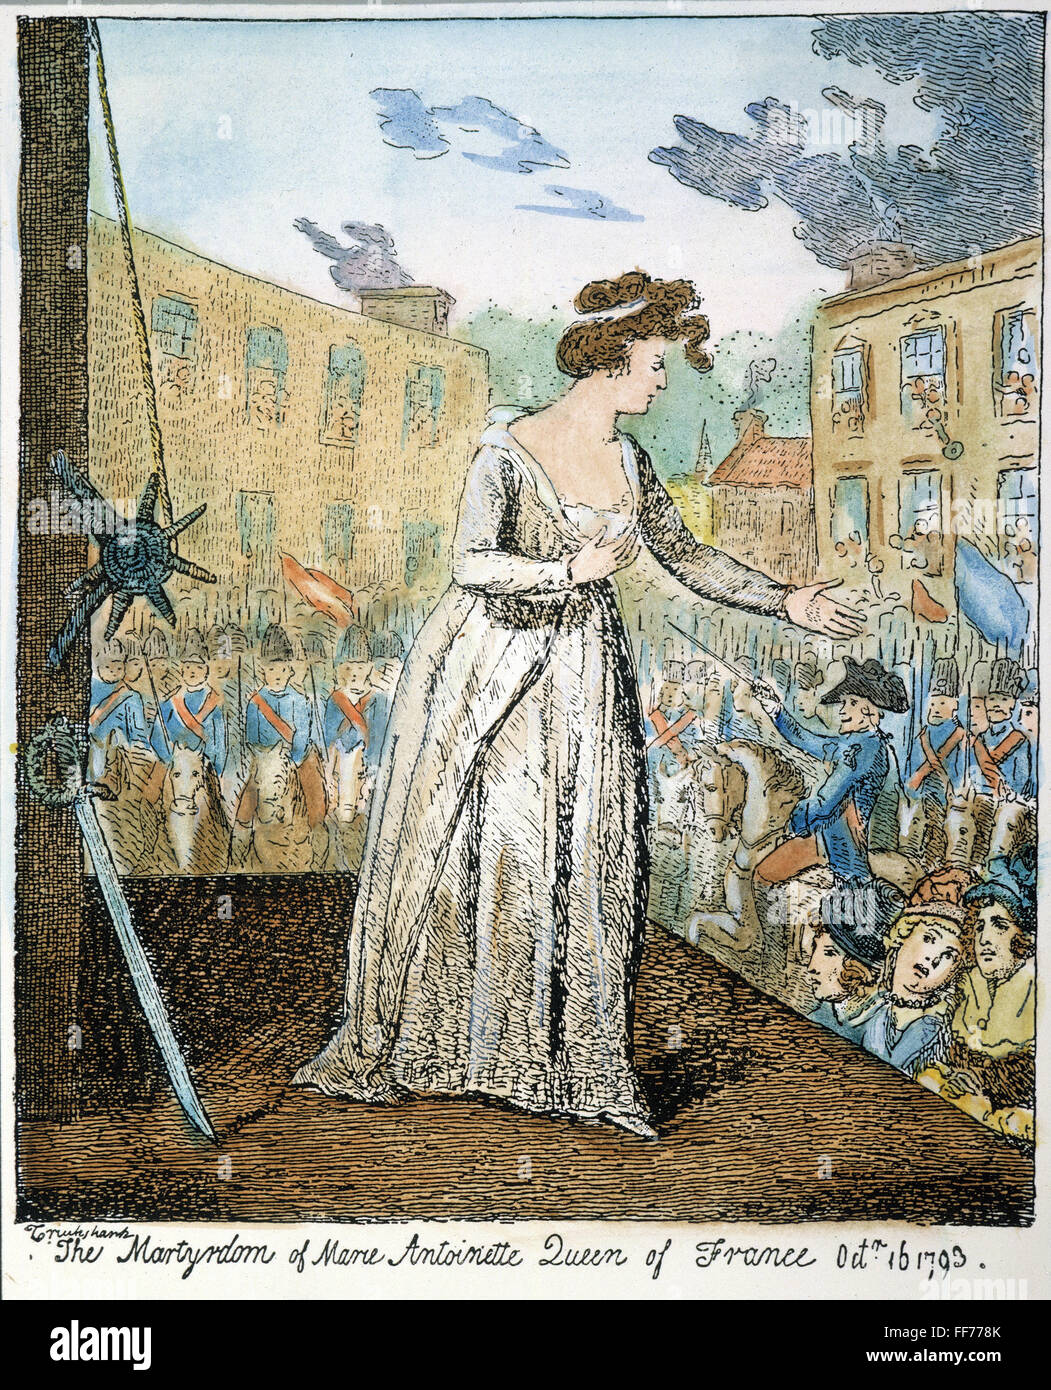 MARIE ANTOINETTE /nat le guillotine, 1793. Gravure couleur par George Cruikshank. Banque D'Images